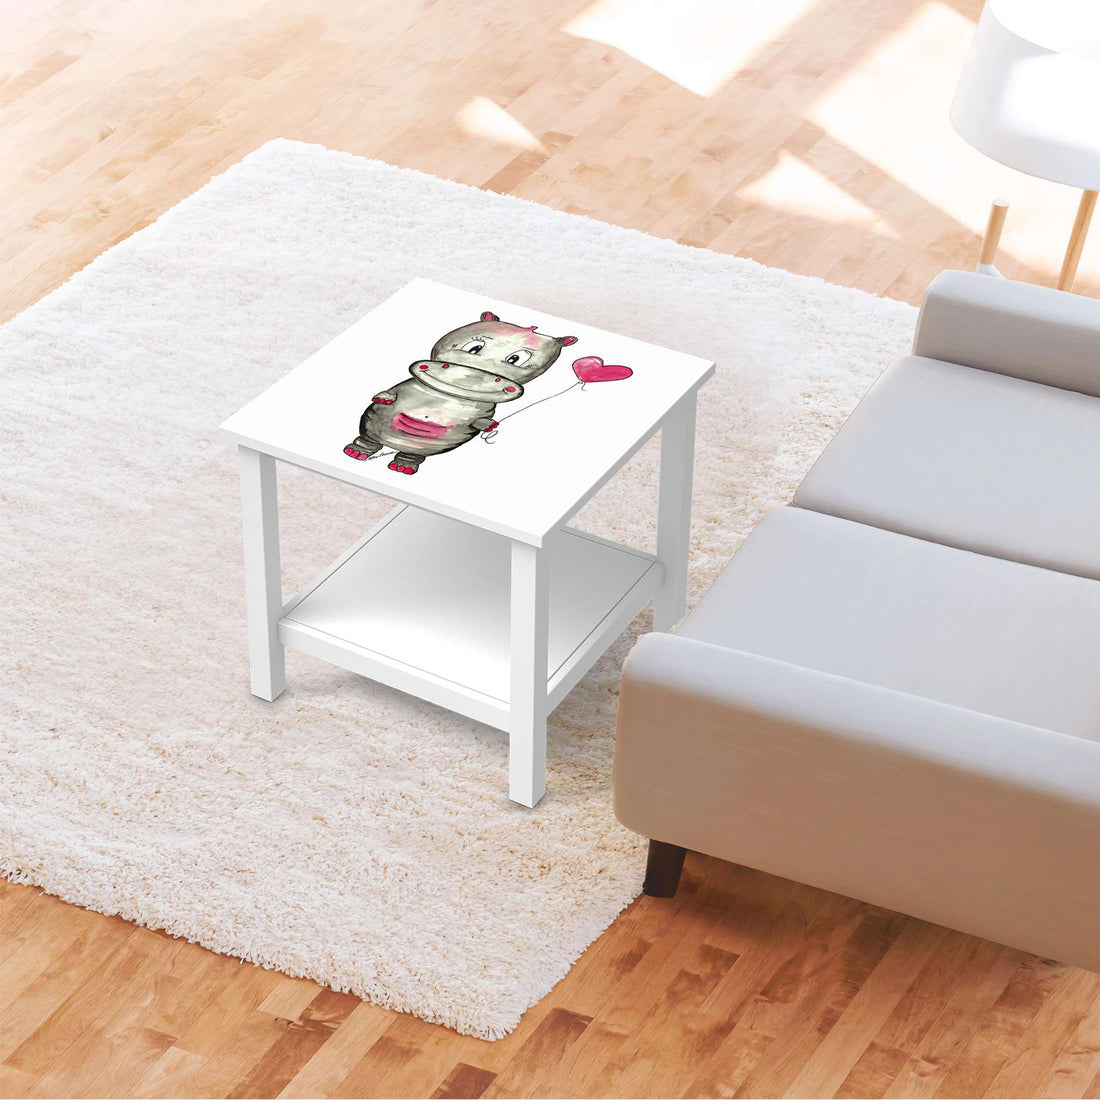 Möbel Klebefolie Nilpferd mit Herz - IKEA Hemnes Beistelltisch 55x55 cm - Kinderzimmer